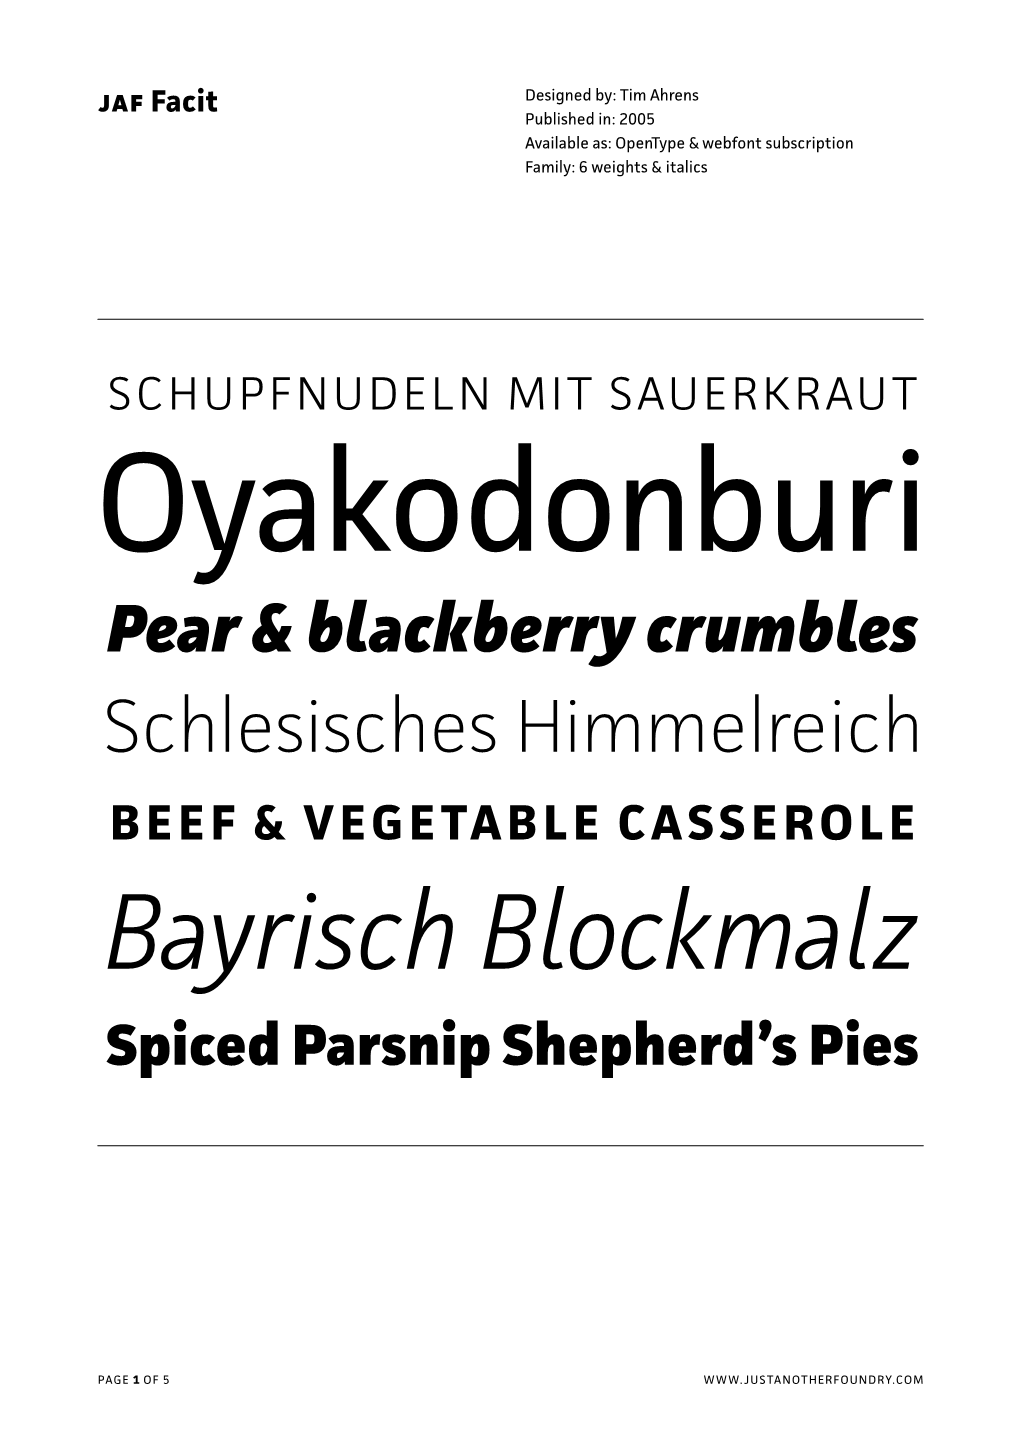 Bayrisch Blockmalz Spiced Parsnip Shepherd’S Pies